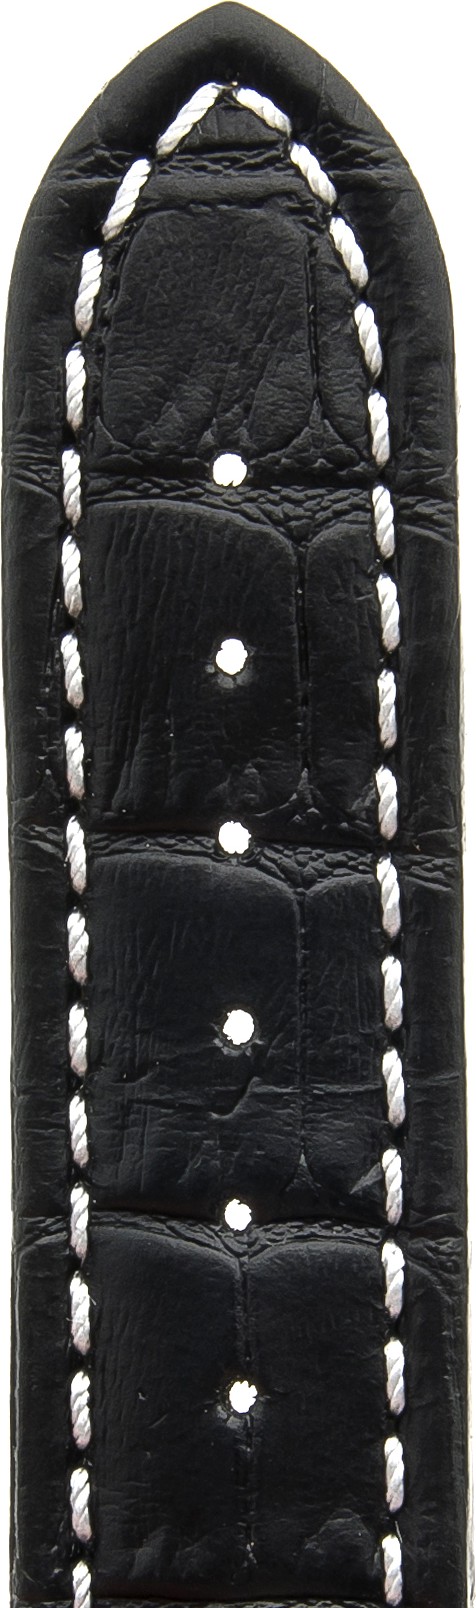   Uhrenarmband Kroko look Butterfly-Schließe - Leder, geprägt - schwarz mit weißer Naht 